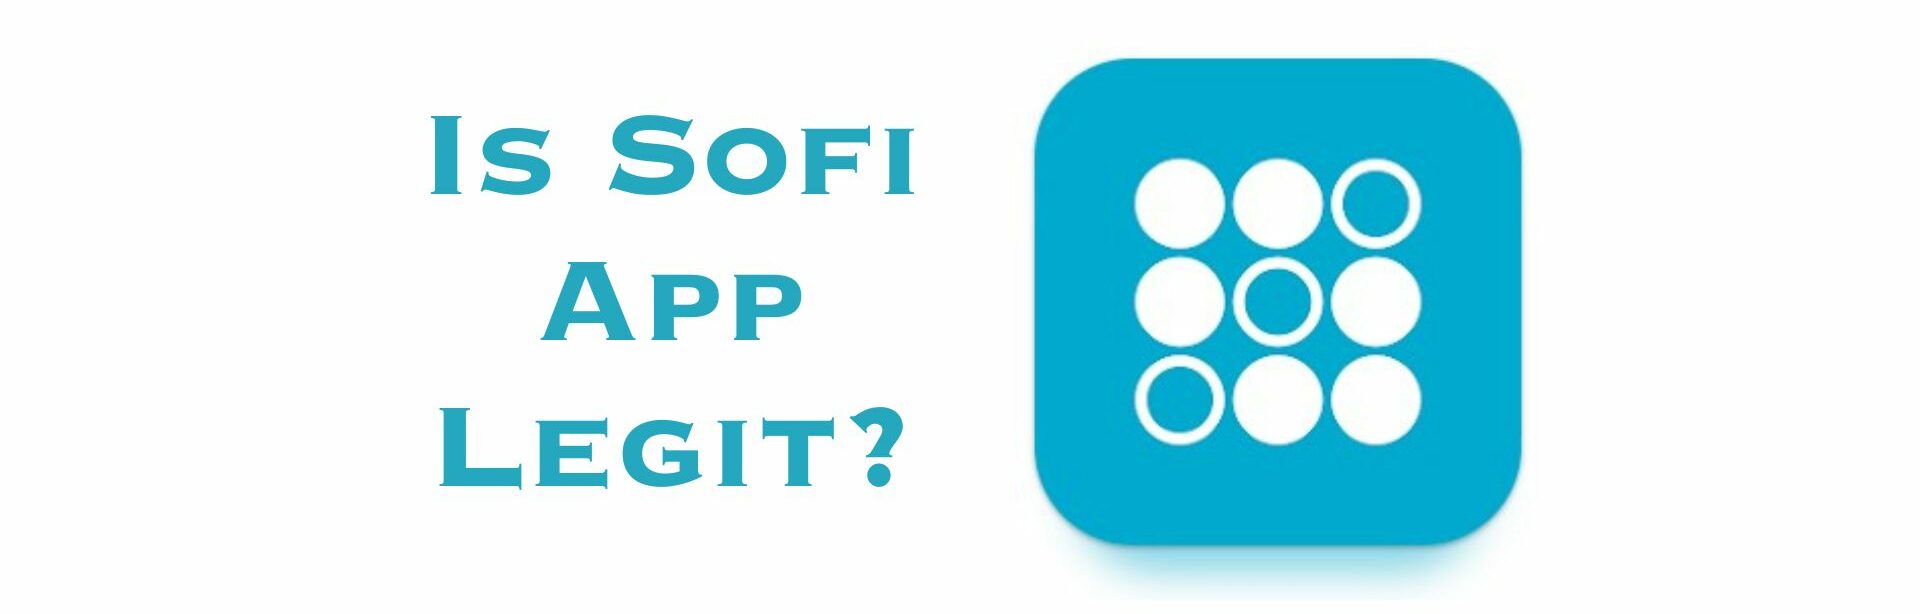 Is SoFi app legit?